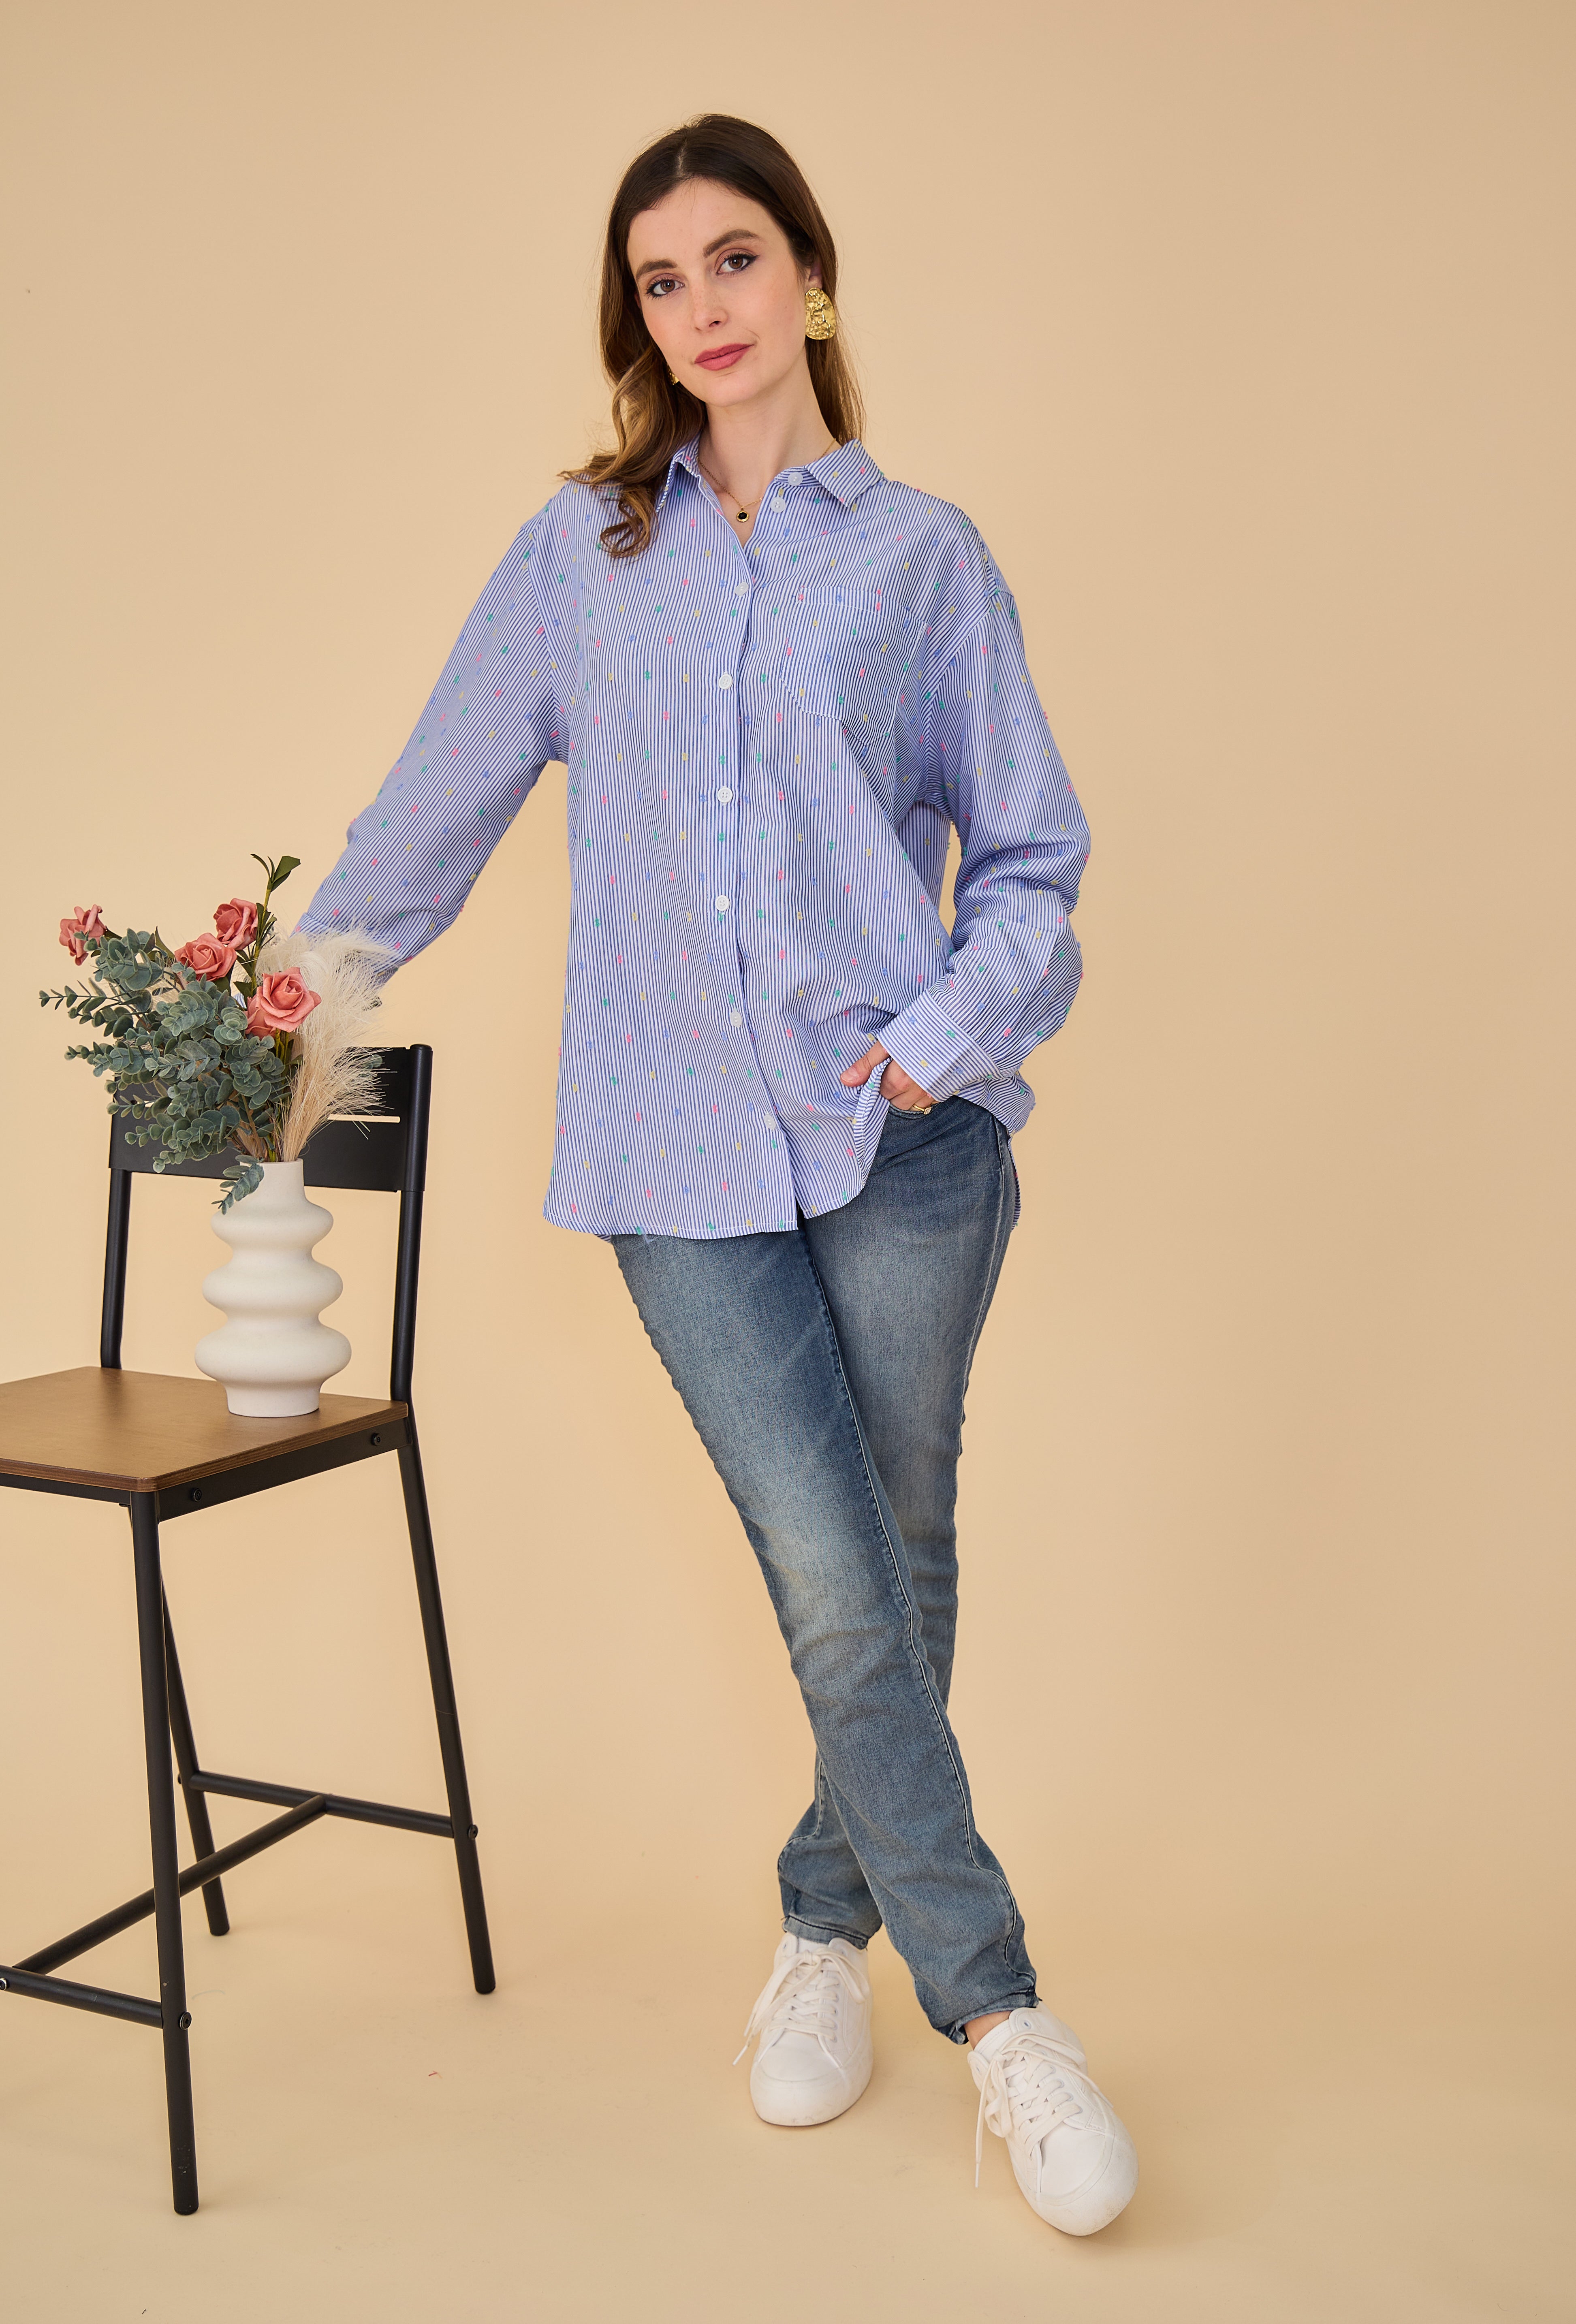 chemise bleue rayée à plumetis multicolores, poche plaqué haut gauche, col français